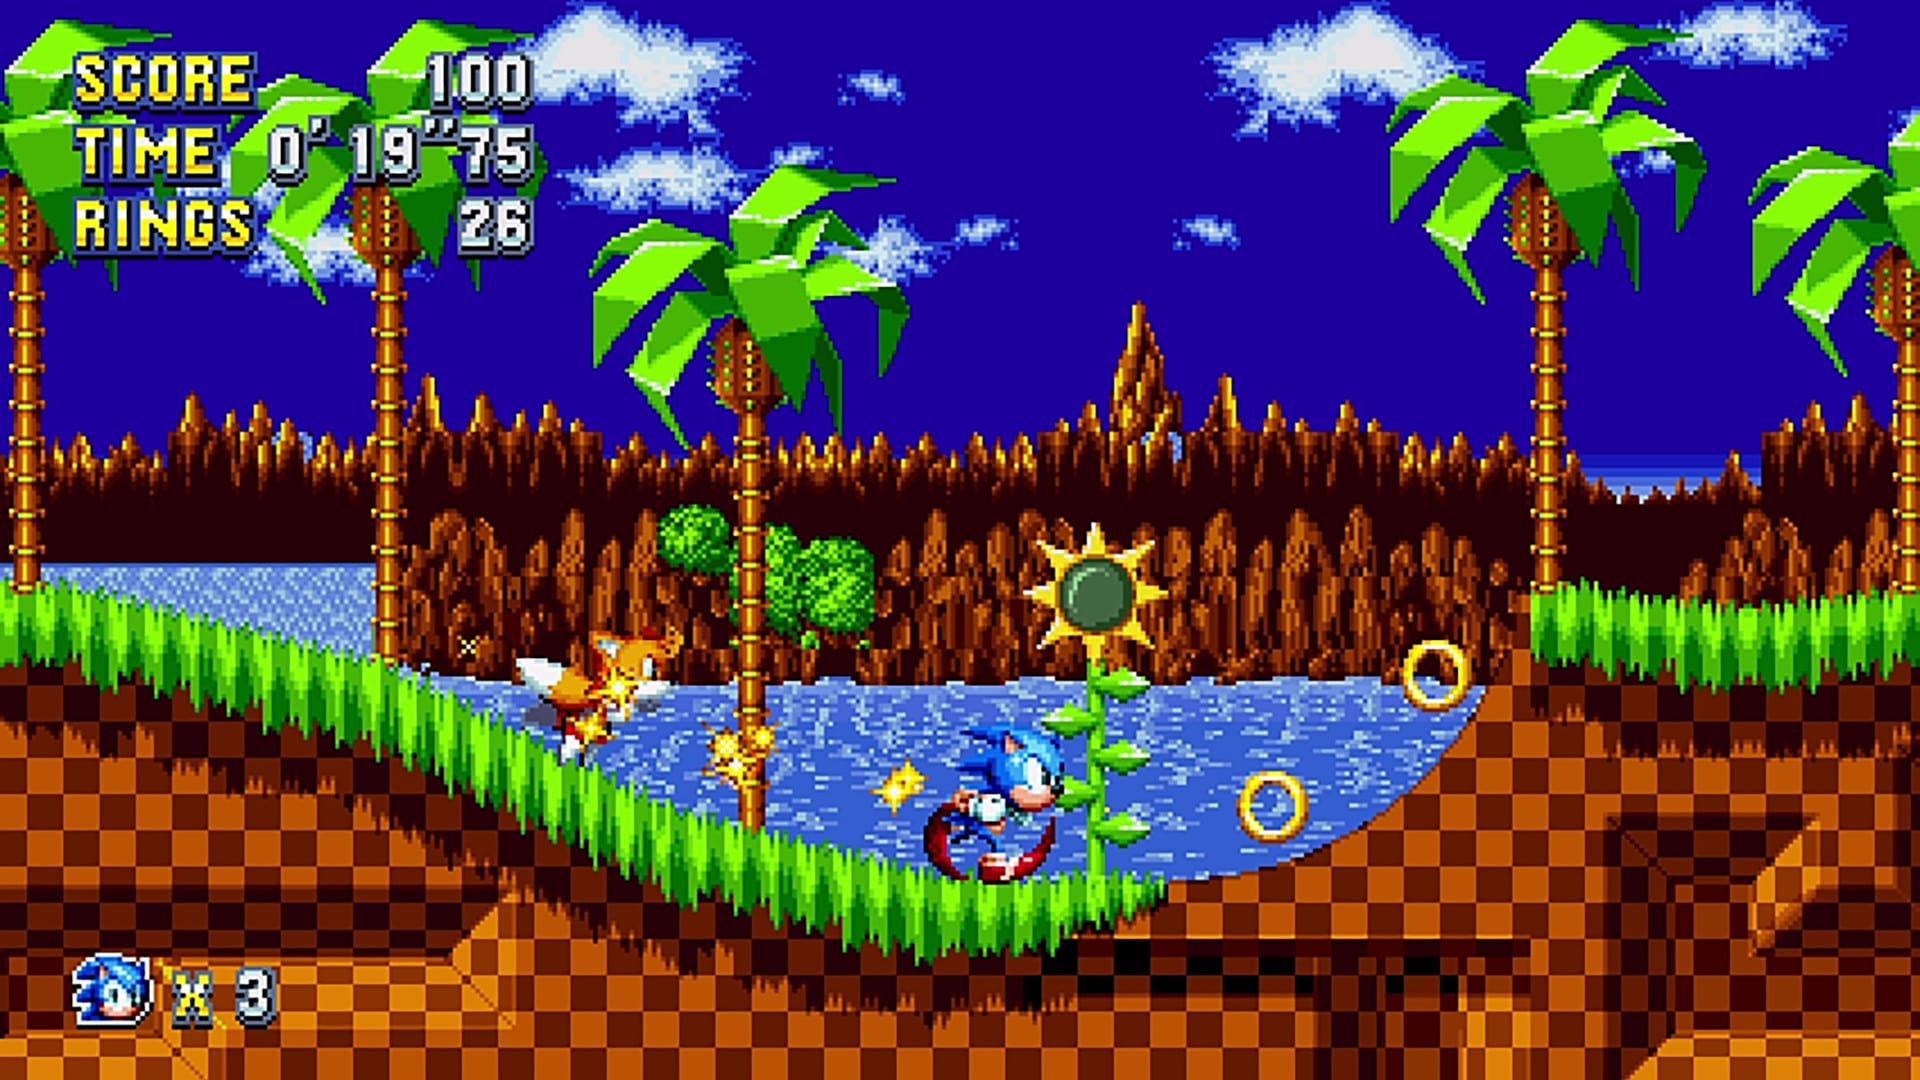 Sonic Mania, Windows PC